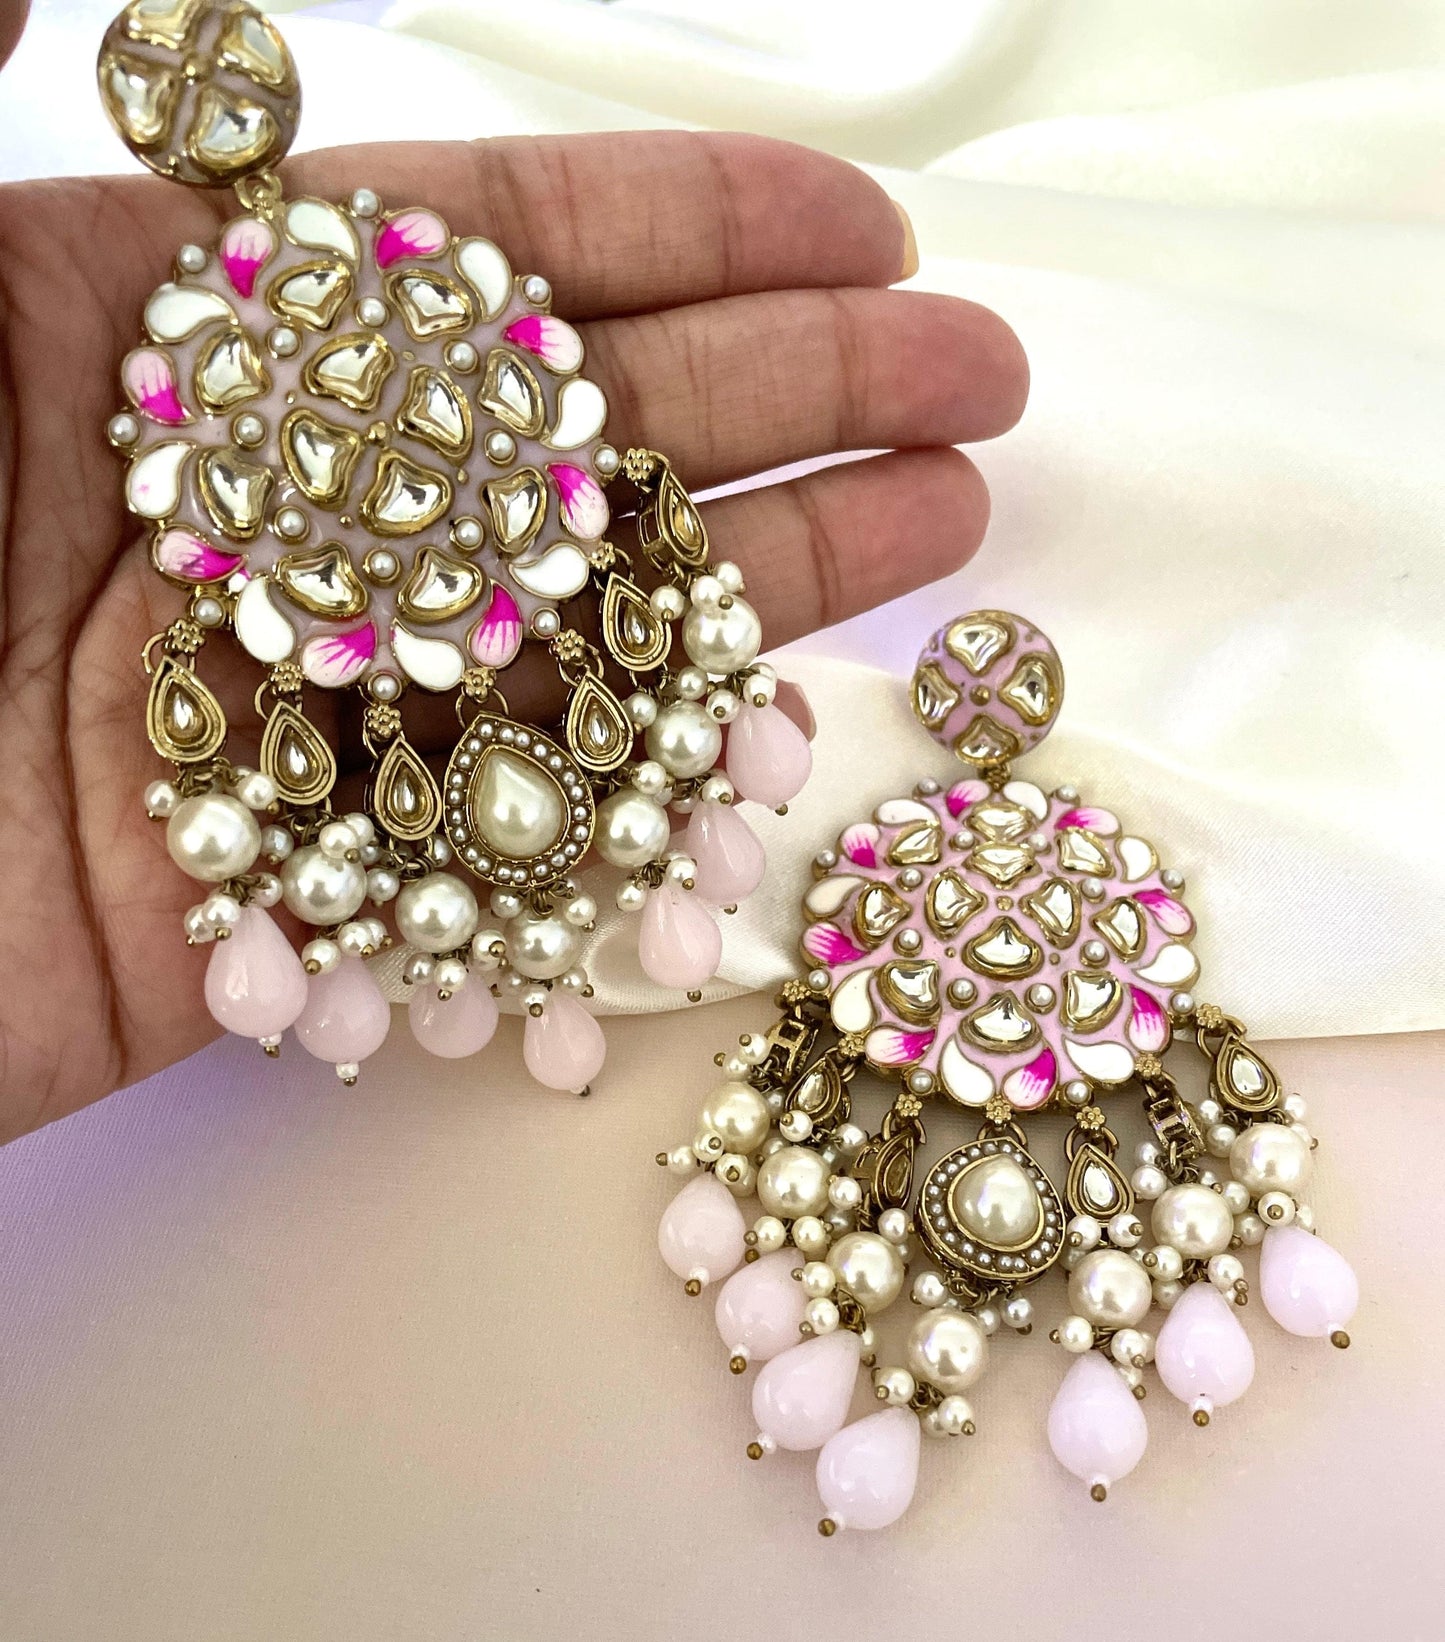 Baby Pink Earrings